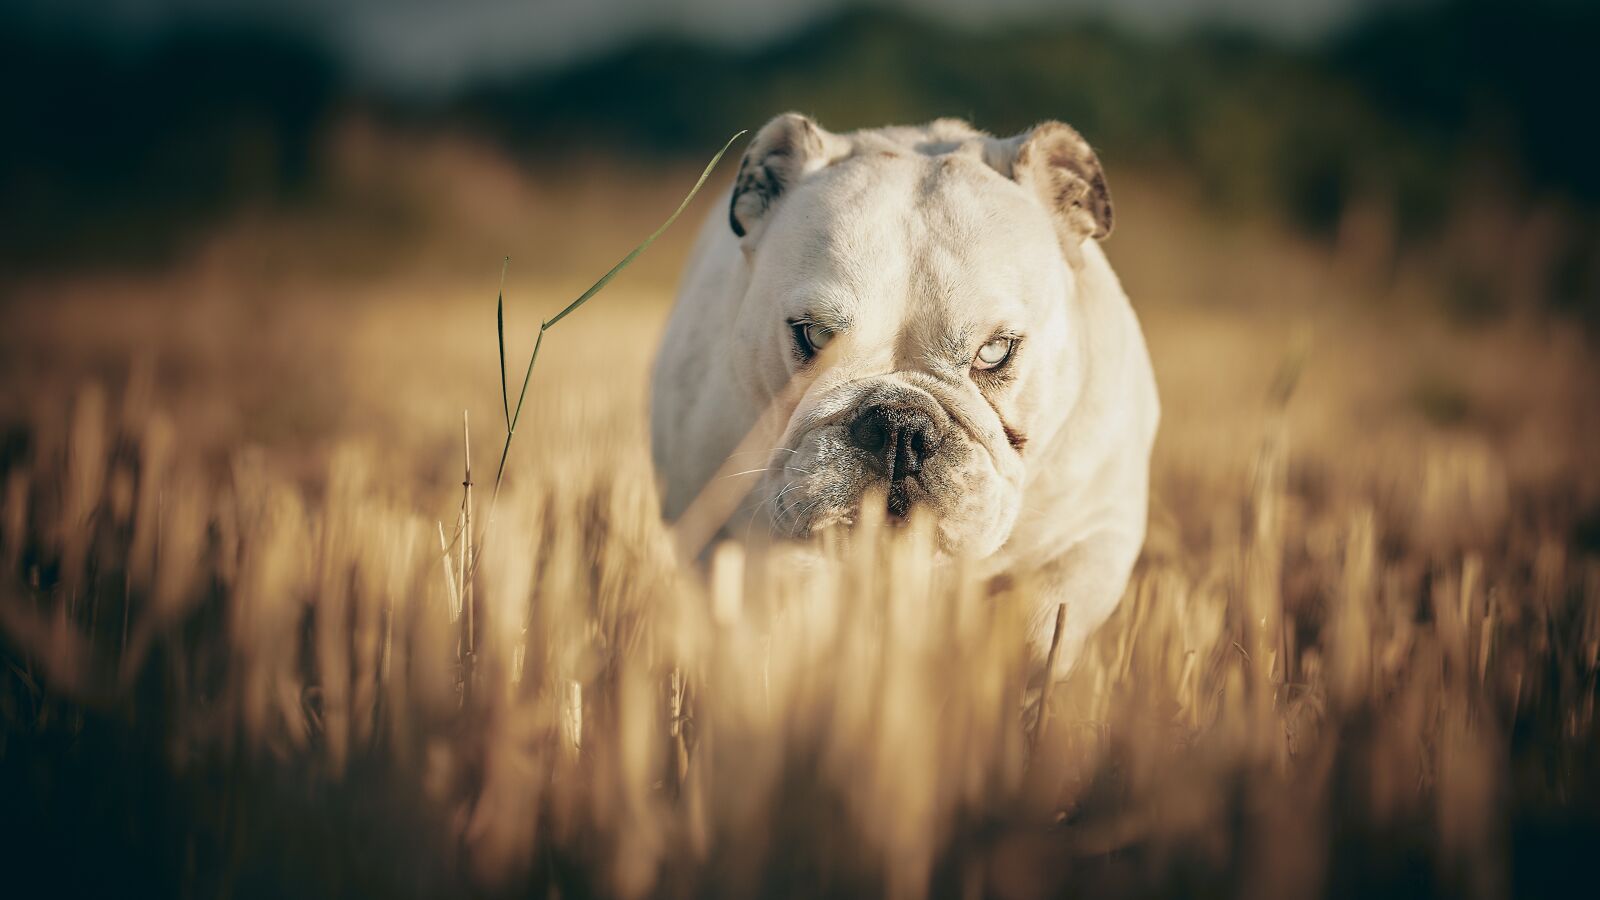 Sigma 56mm F1.4 DC DN | C sample photo. Bulldog, dog, portrait photography